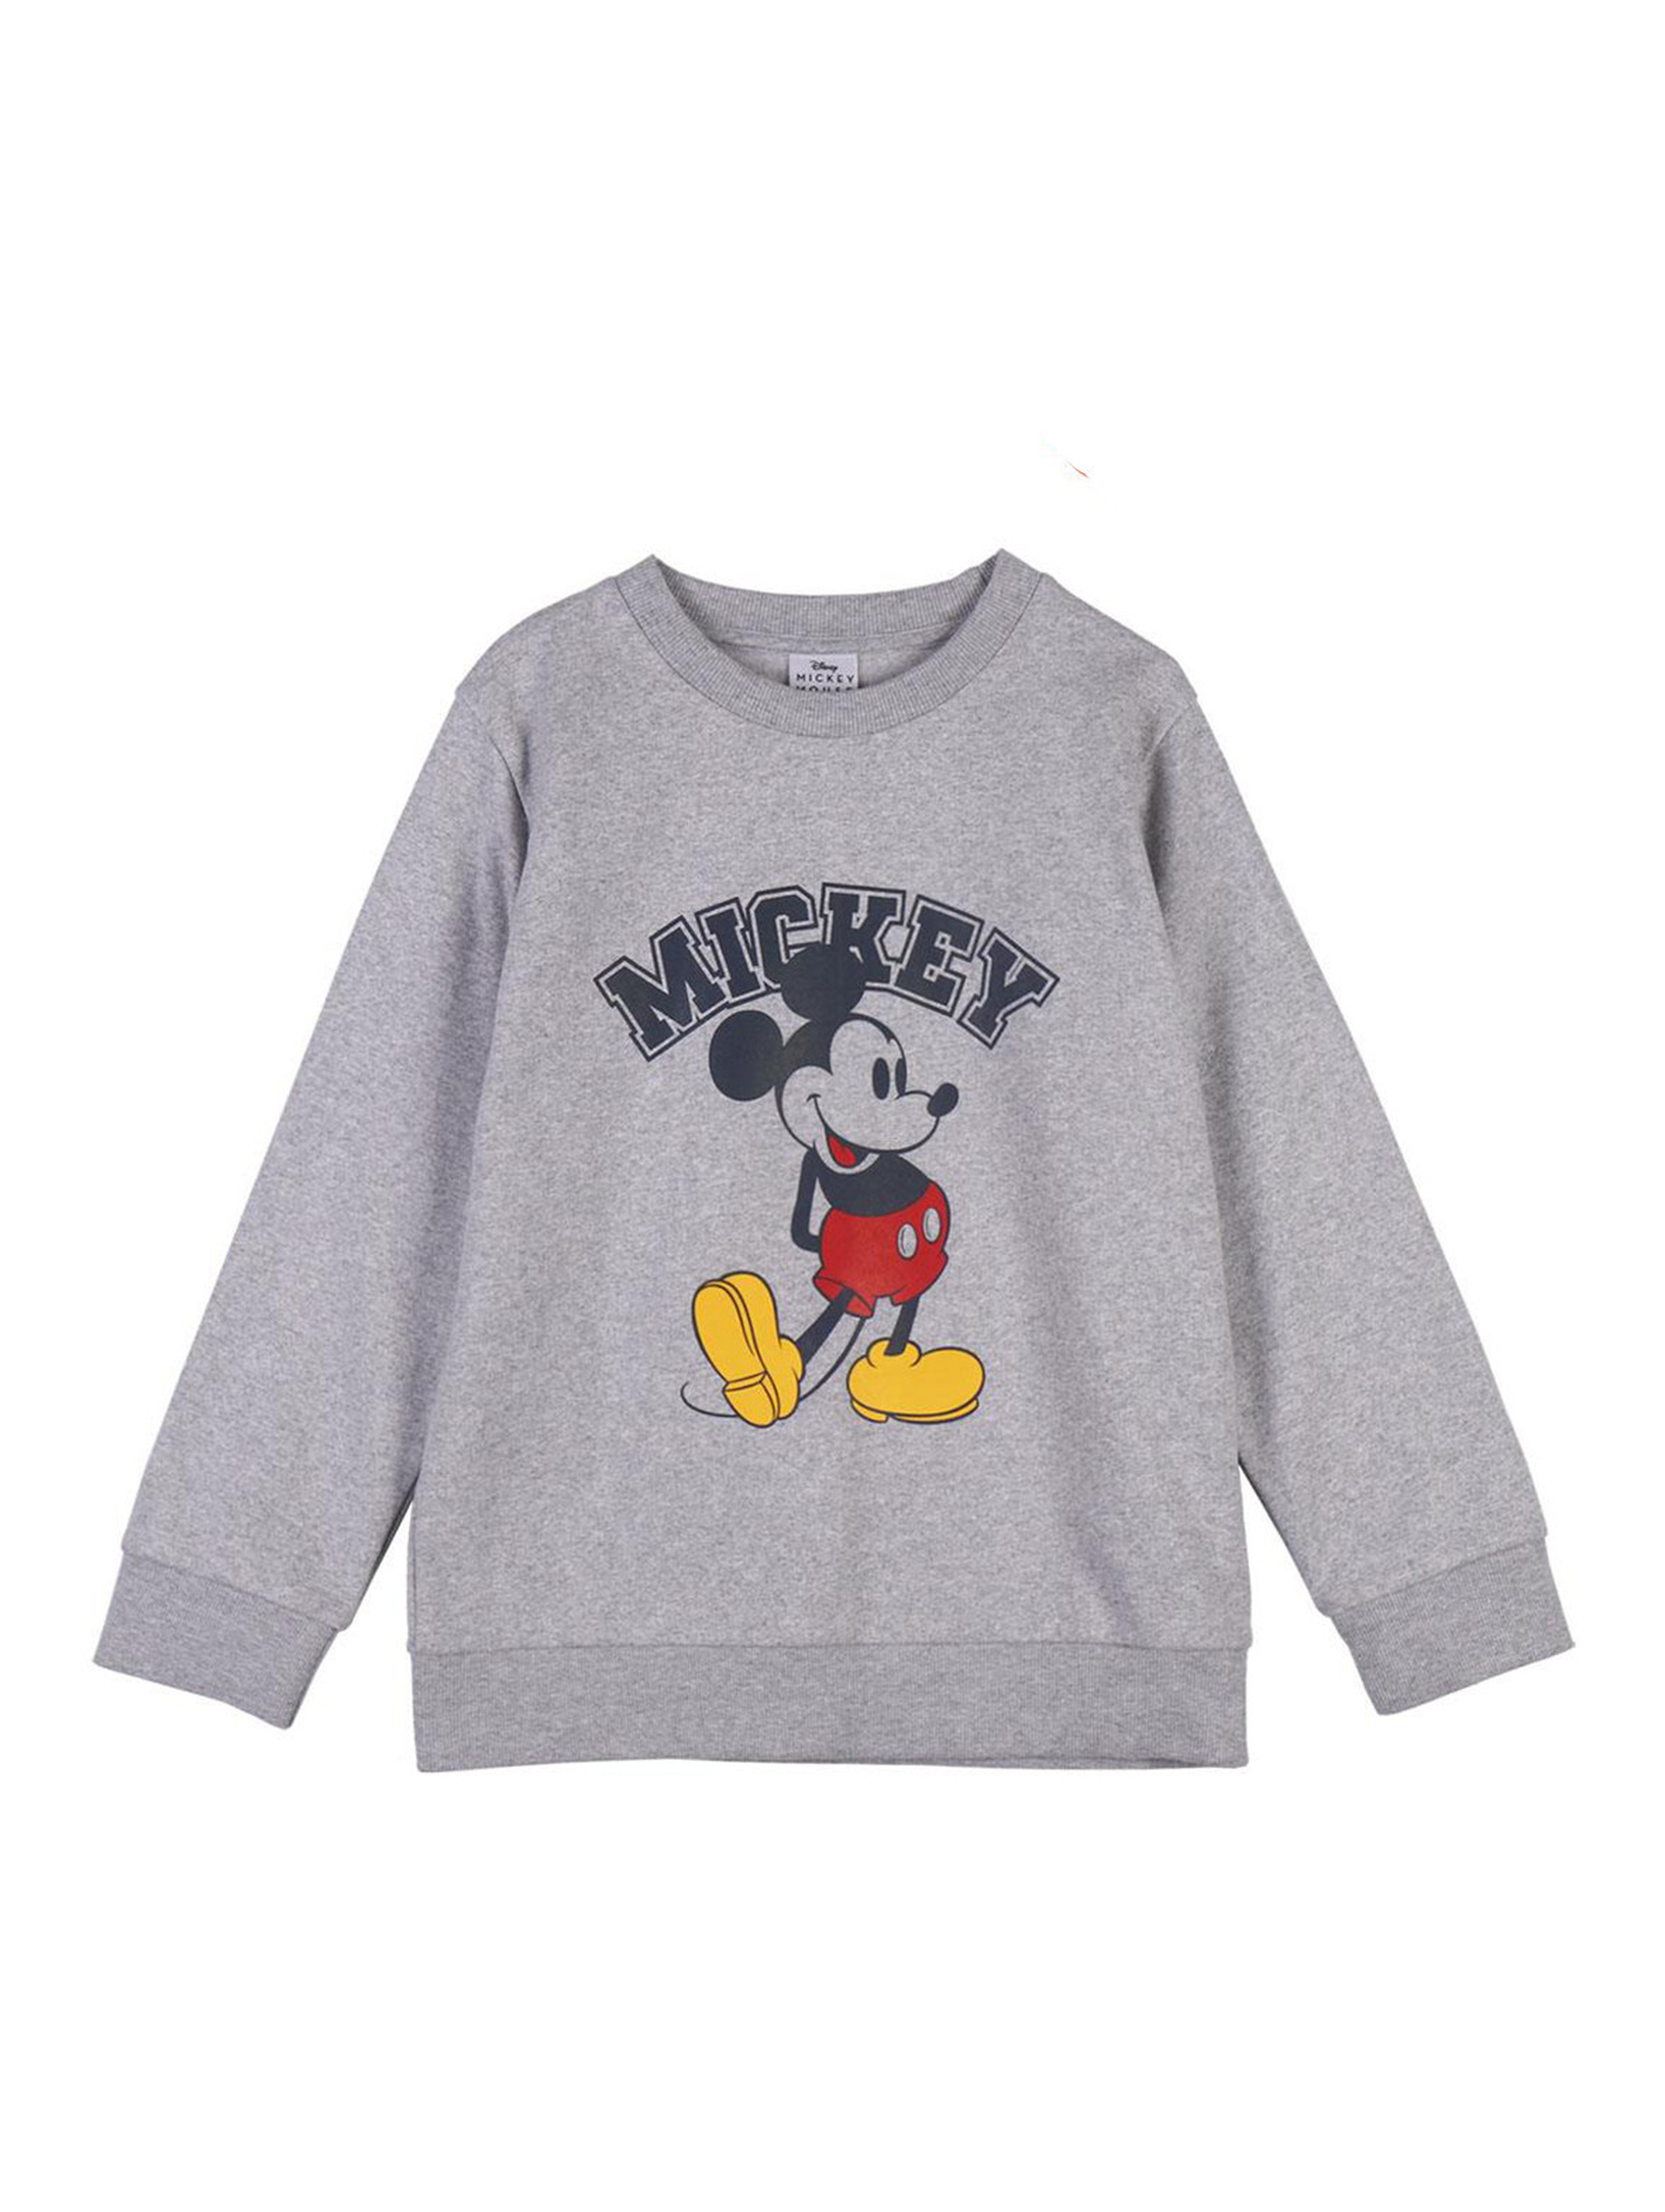 Bluza chłopięca nierozpinana - Myszka Mickey